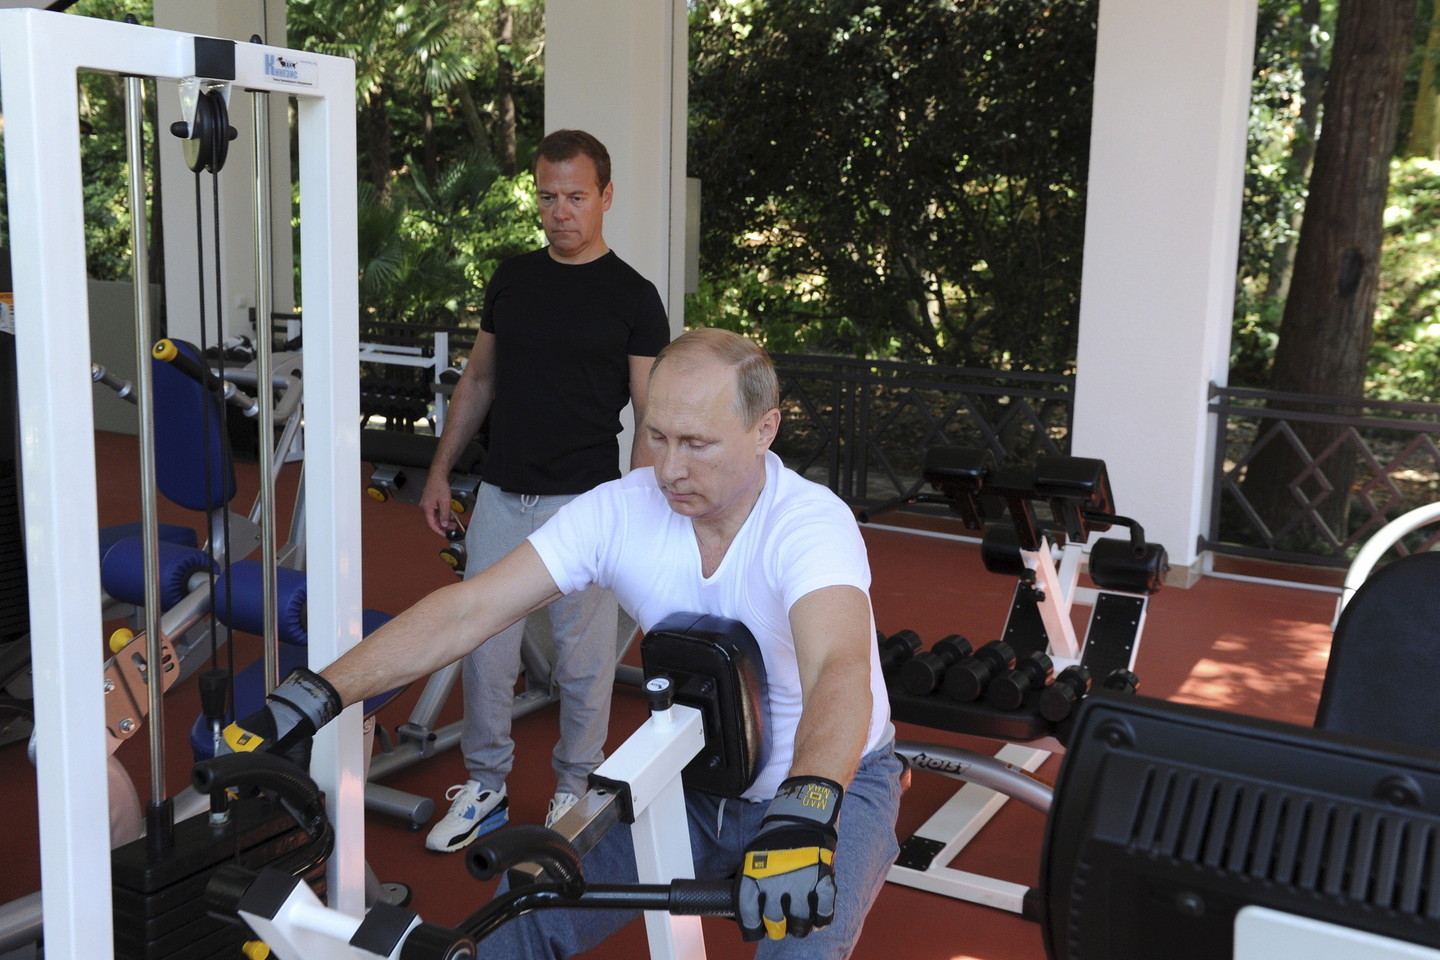 Pasitaikius progai, V.Putinas demonstruoja raumenis.<br>AFP/Scanpix nuotr.